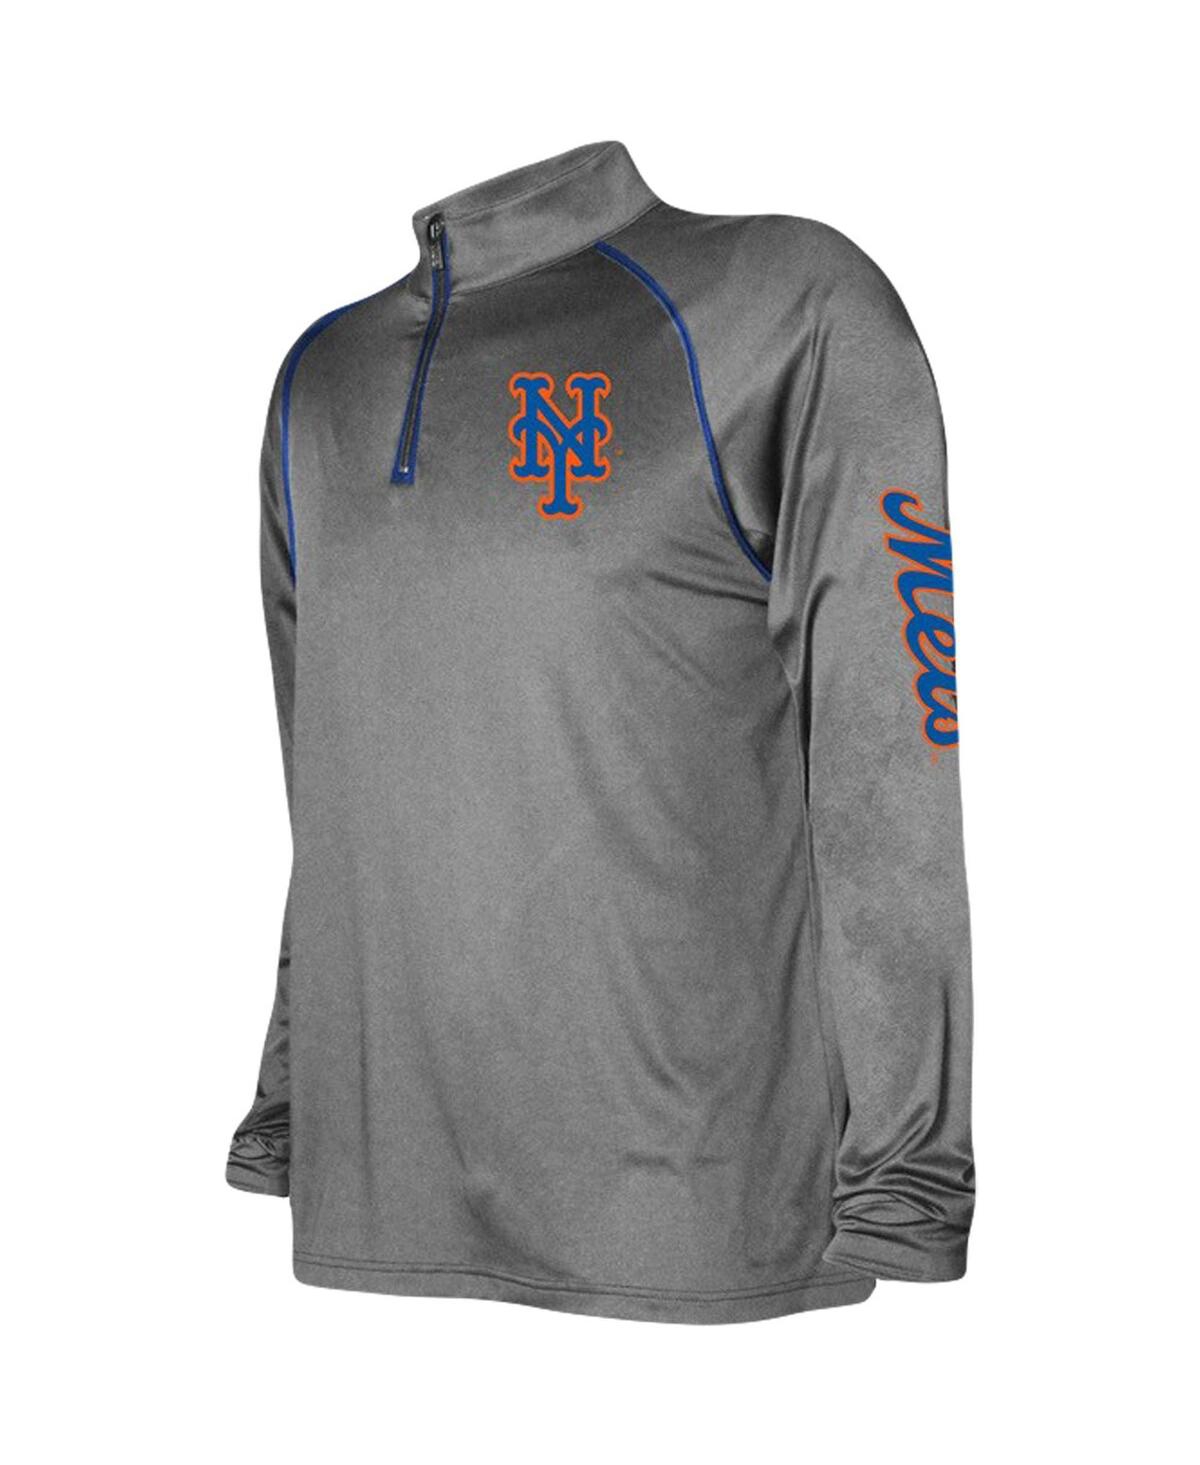 Shop Stitches Men's  Heather Gray New York Mets Wordmark Raglan Quarter-zip Sweatshirt